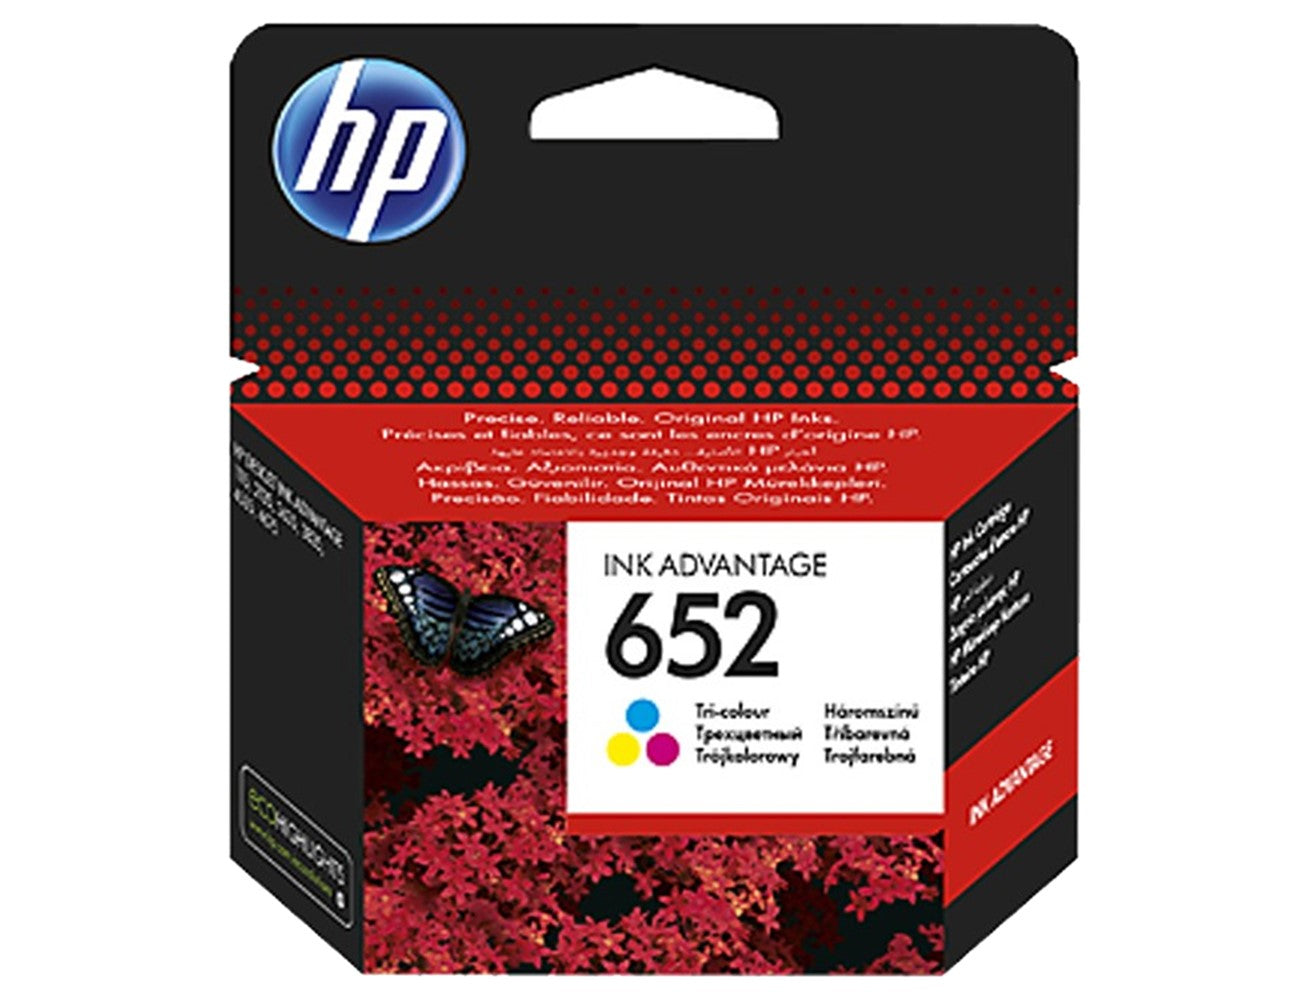 HP 652 Original Tri-color Ink Cartridge